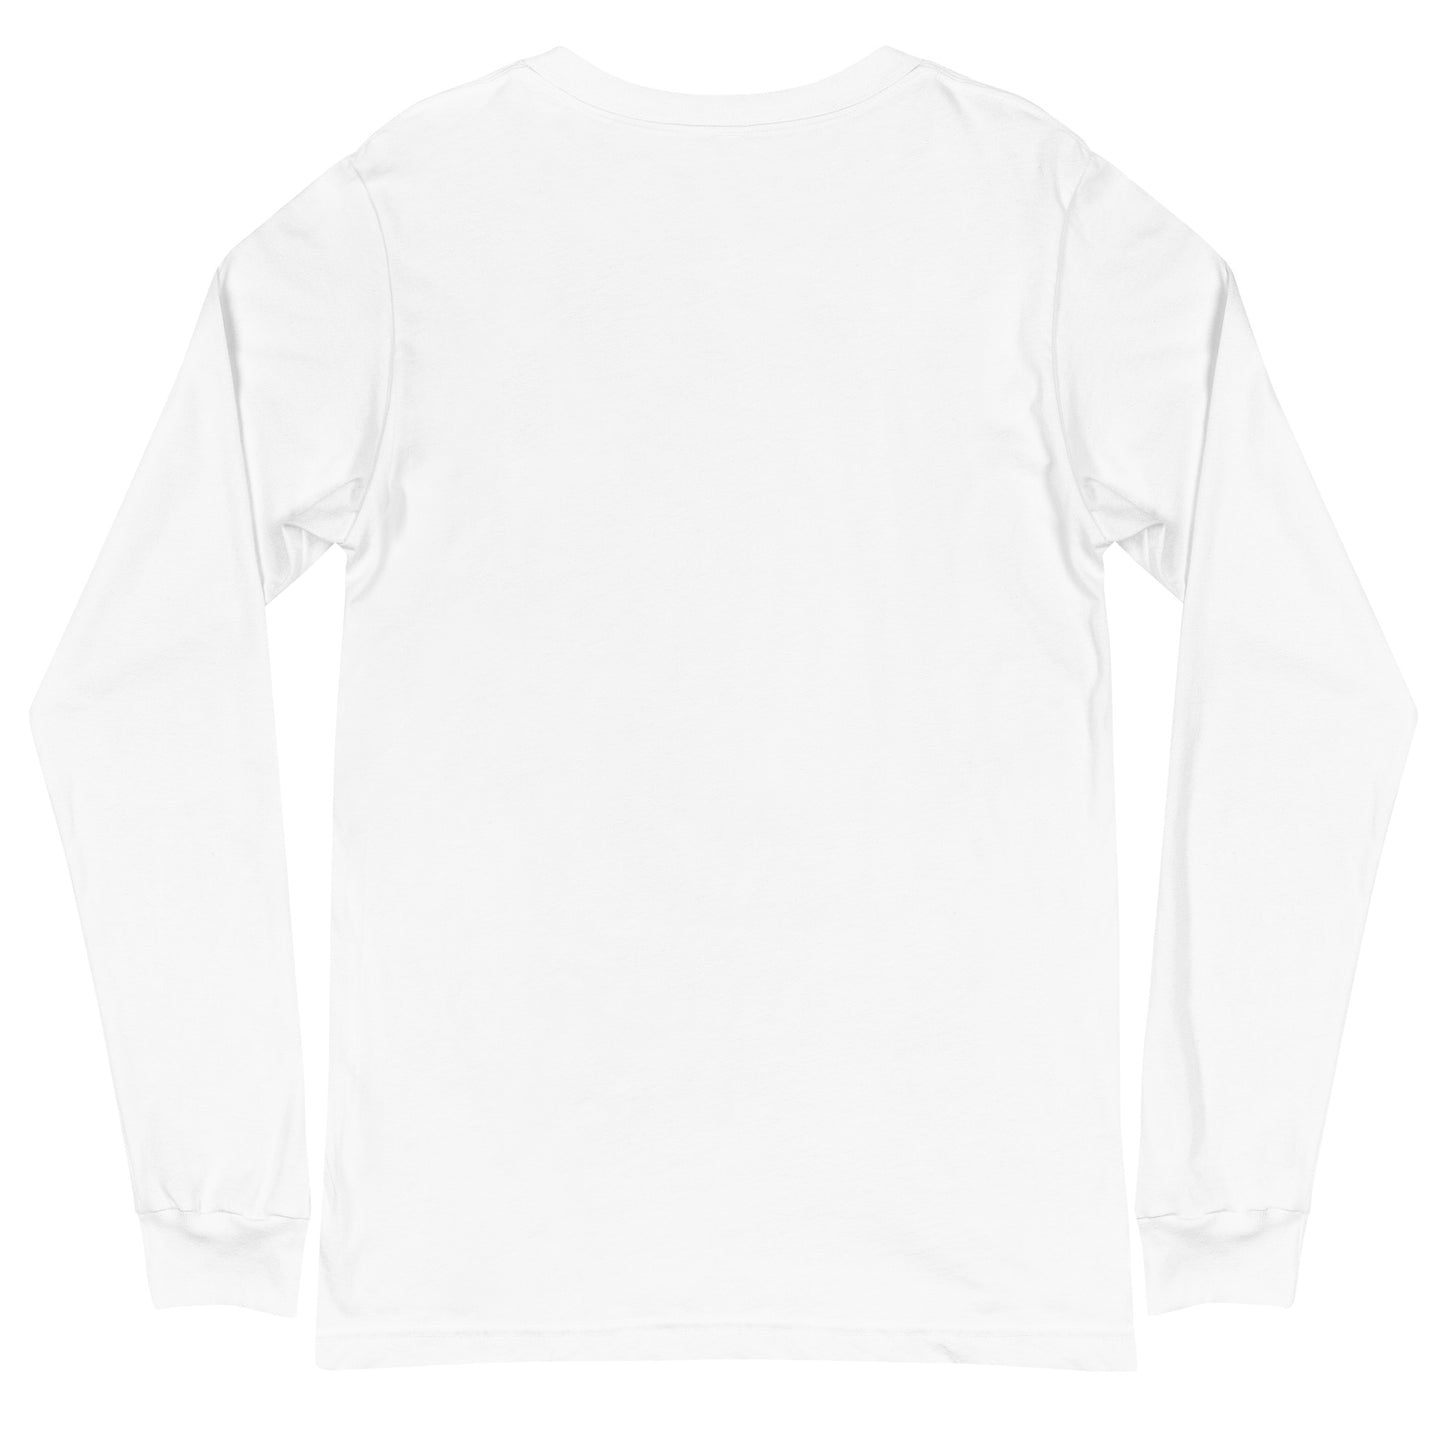 Langärmeliges Unisex-T-Shirt "HBF" (Augen halb offen)